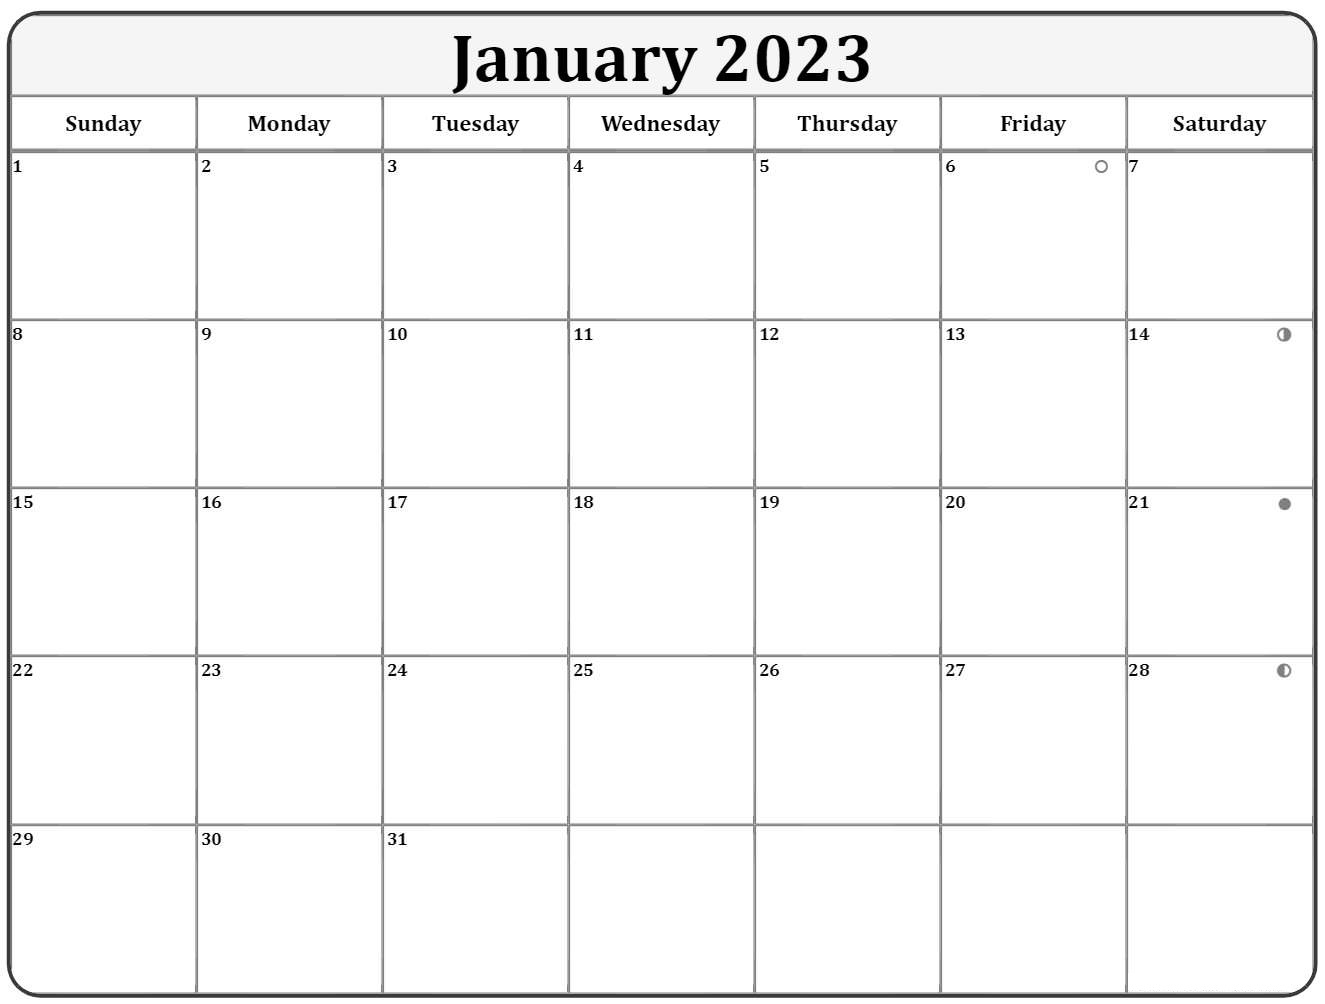 January 2023 calendar moon